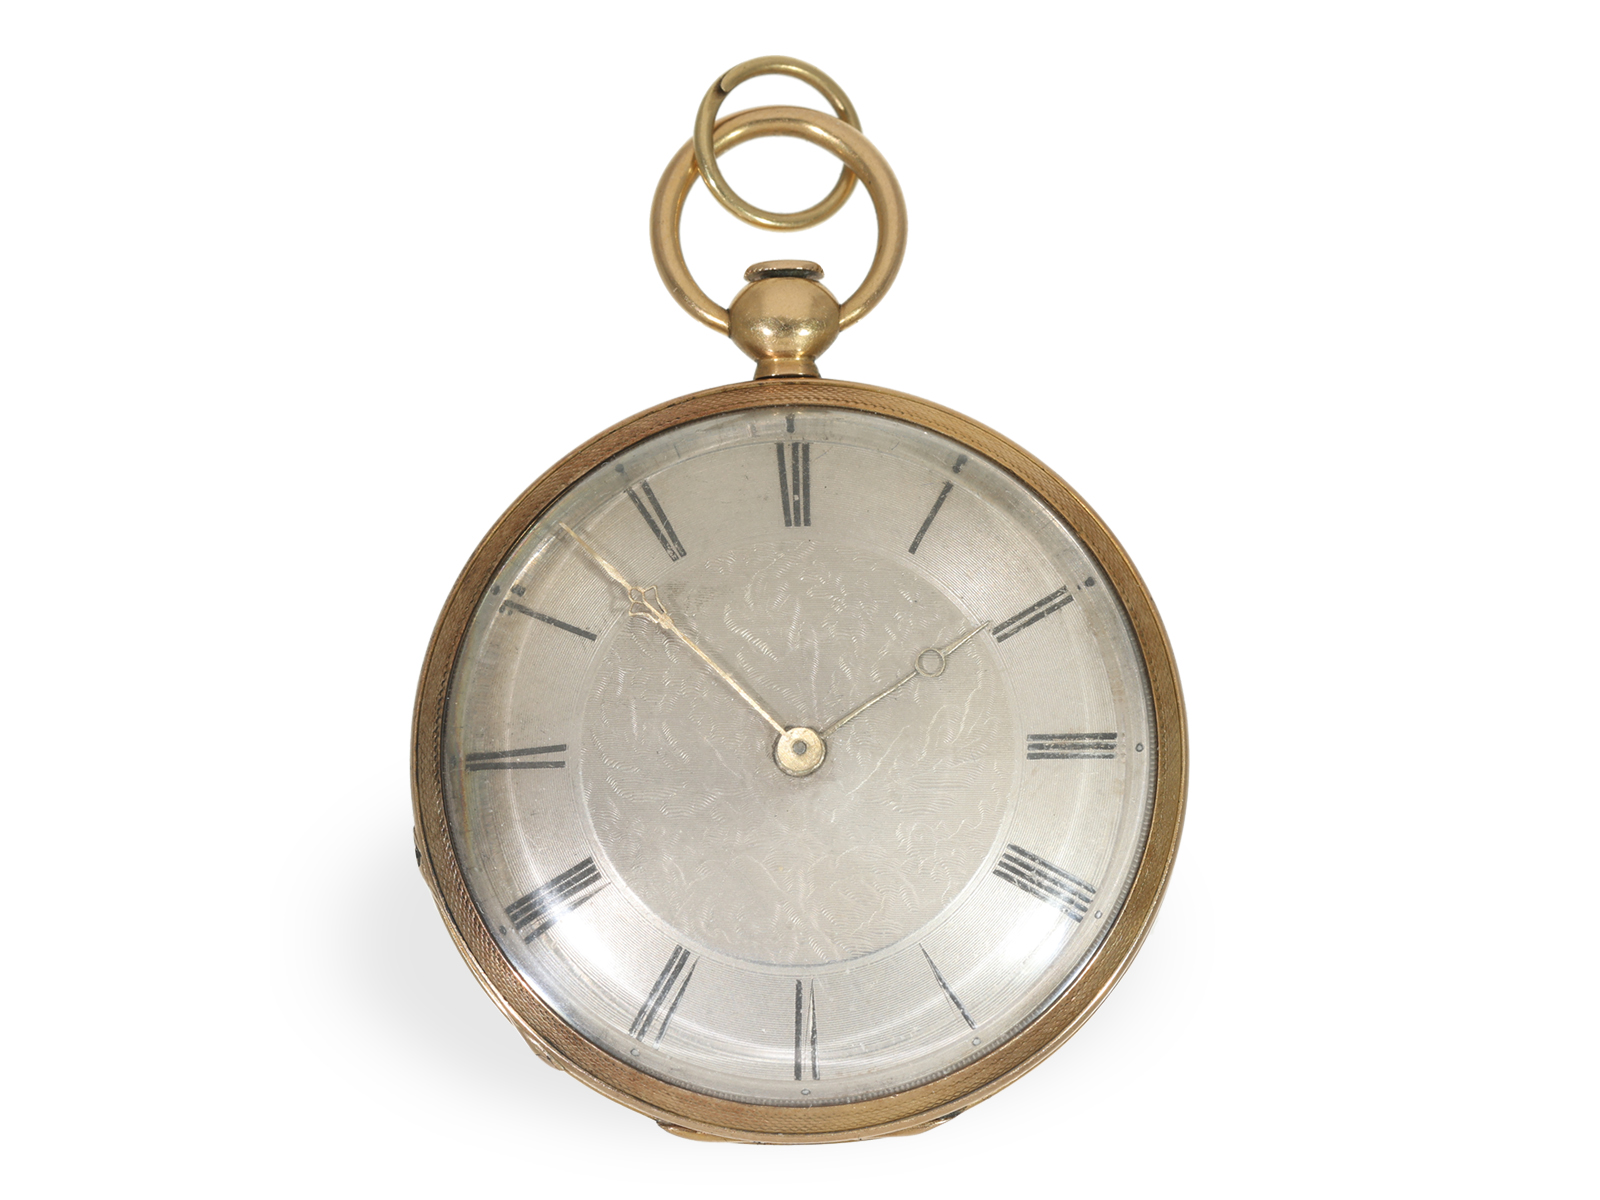 Pocket watch: very flat lepine around 1820